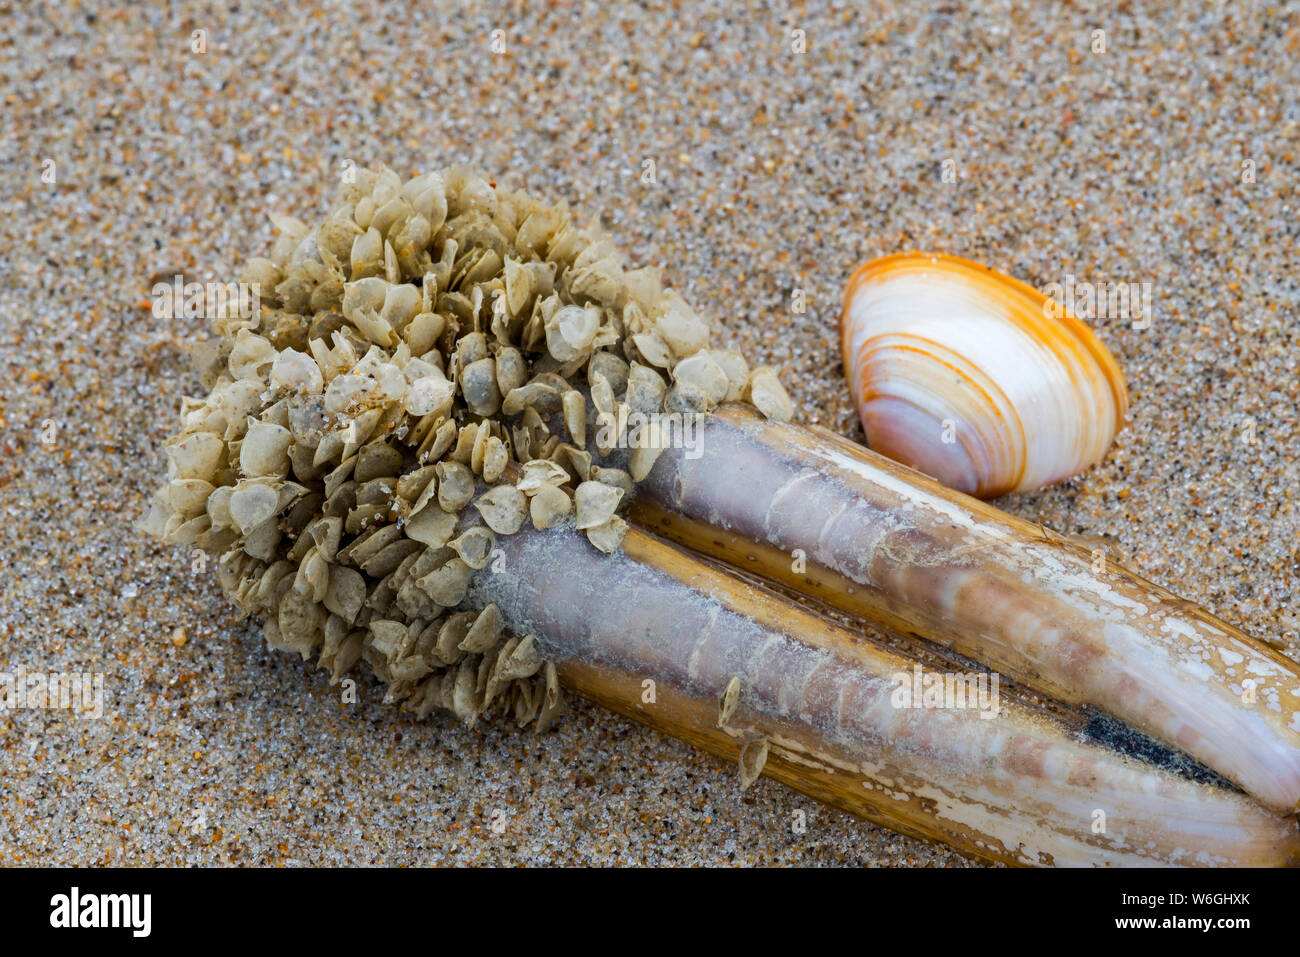 Casi di uovo / uova di cane reticolare Buccino (Tritia reticulata / Nassarius reticulatus / Hinia reticulata), marine molluschi gasteropodi, si è incagliata sulla spiaggia Foto Stock